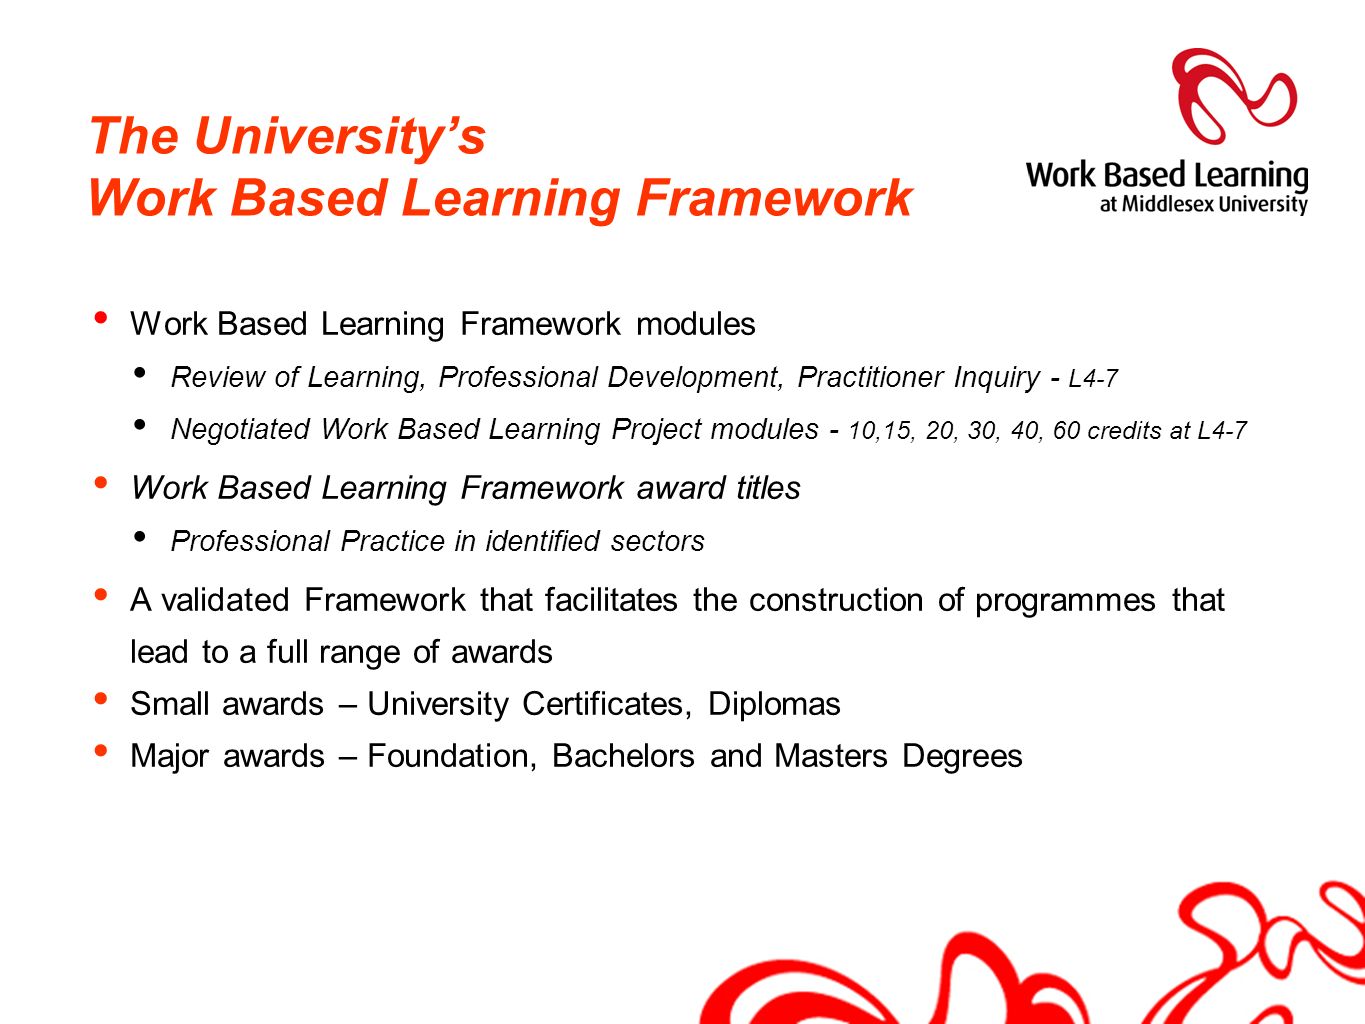 The University’s Work Based Learning Framework